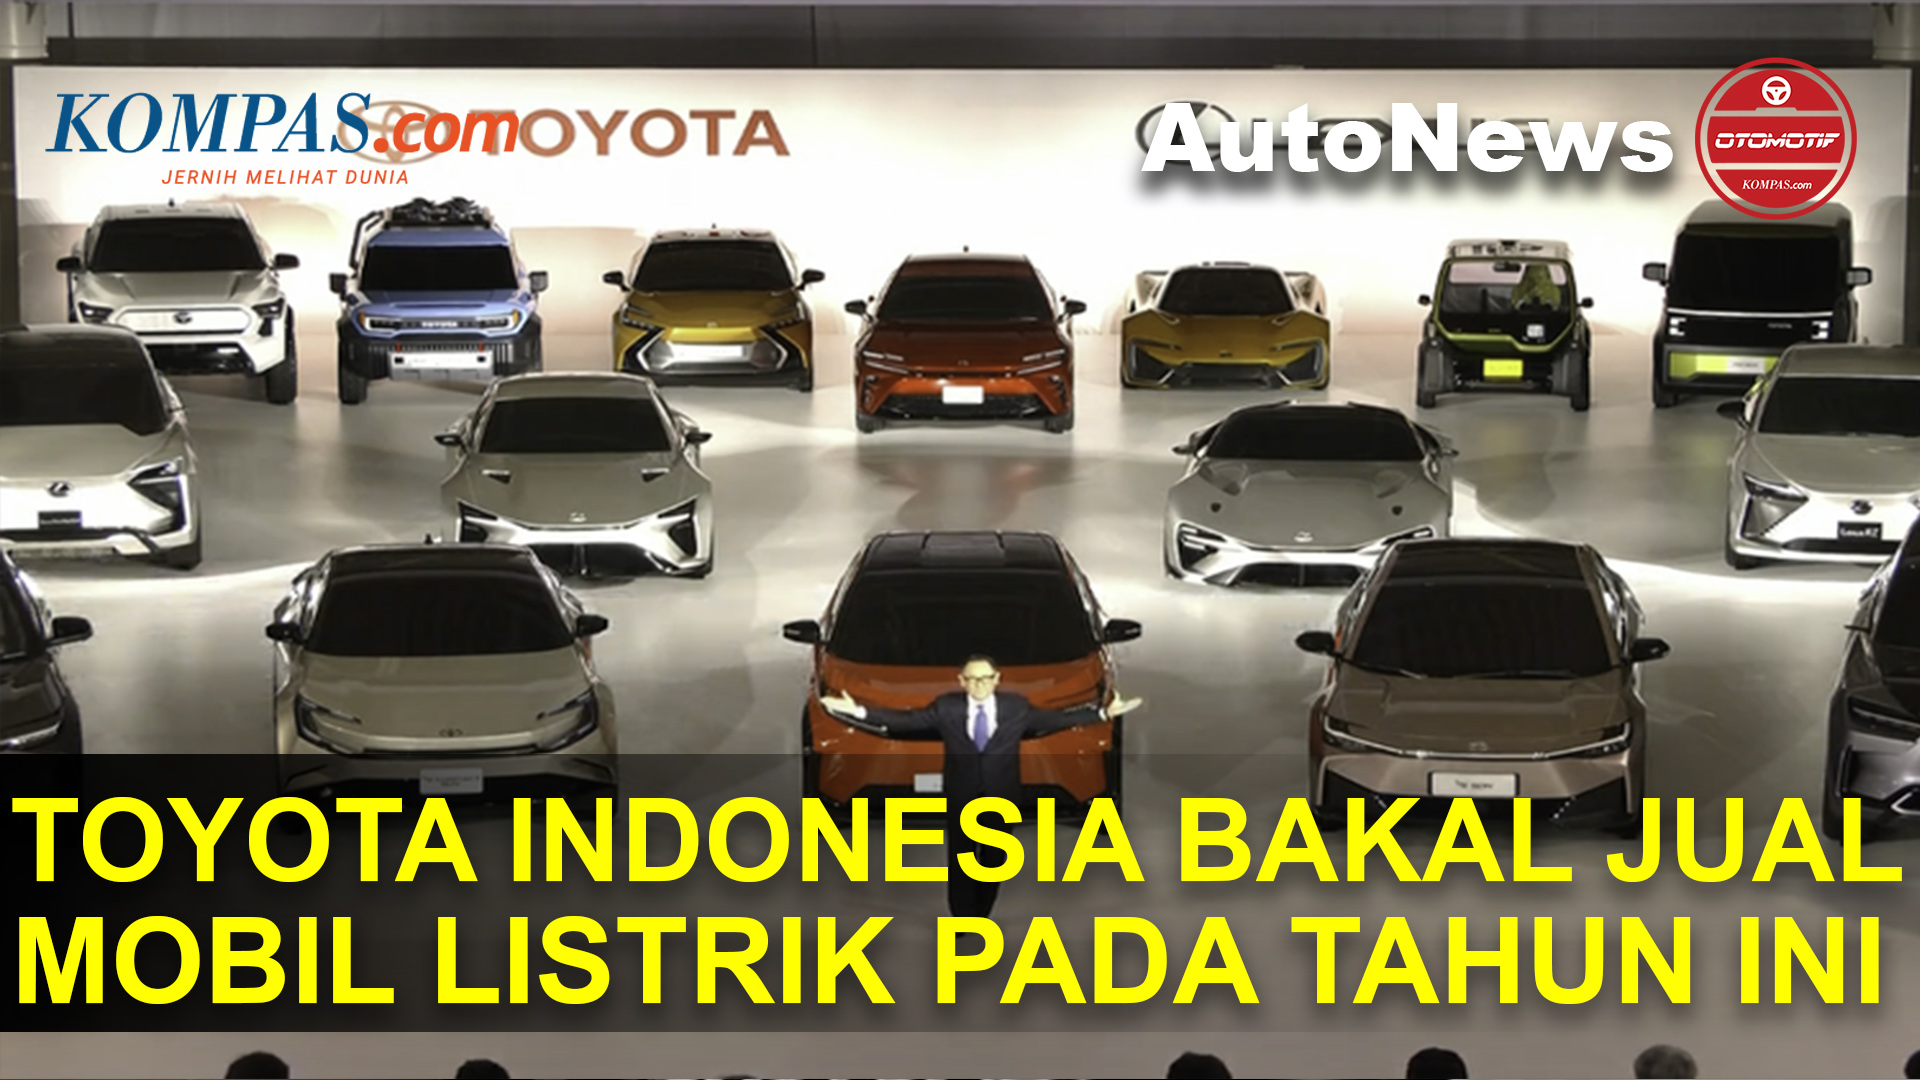 Toyota Indonesia Menyebut Bakal Menjual Mobil Listrik Pada Tahun Ini